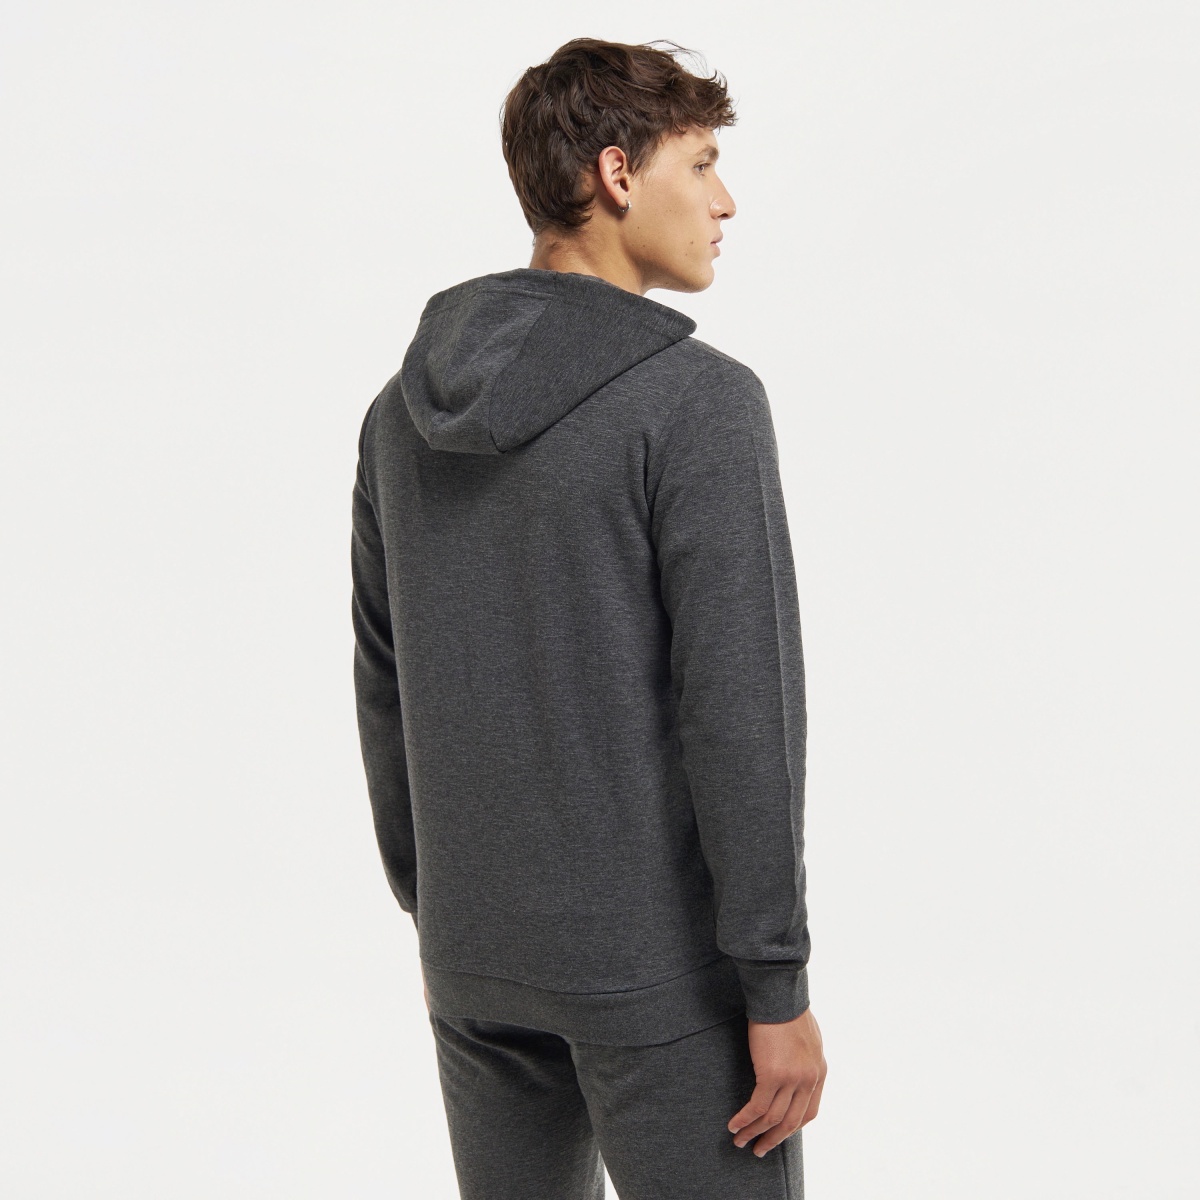 Street Letter & Bull Pattern Men's Hooded Sweatshirt With Kangaroo Pocket,  Men's Trendy Pullover Tops For Fall Winter - Temu Austria